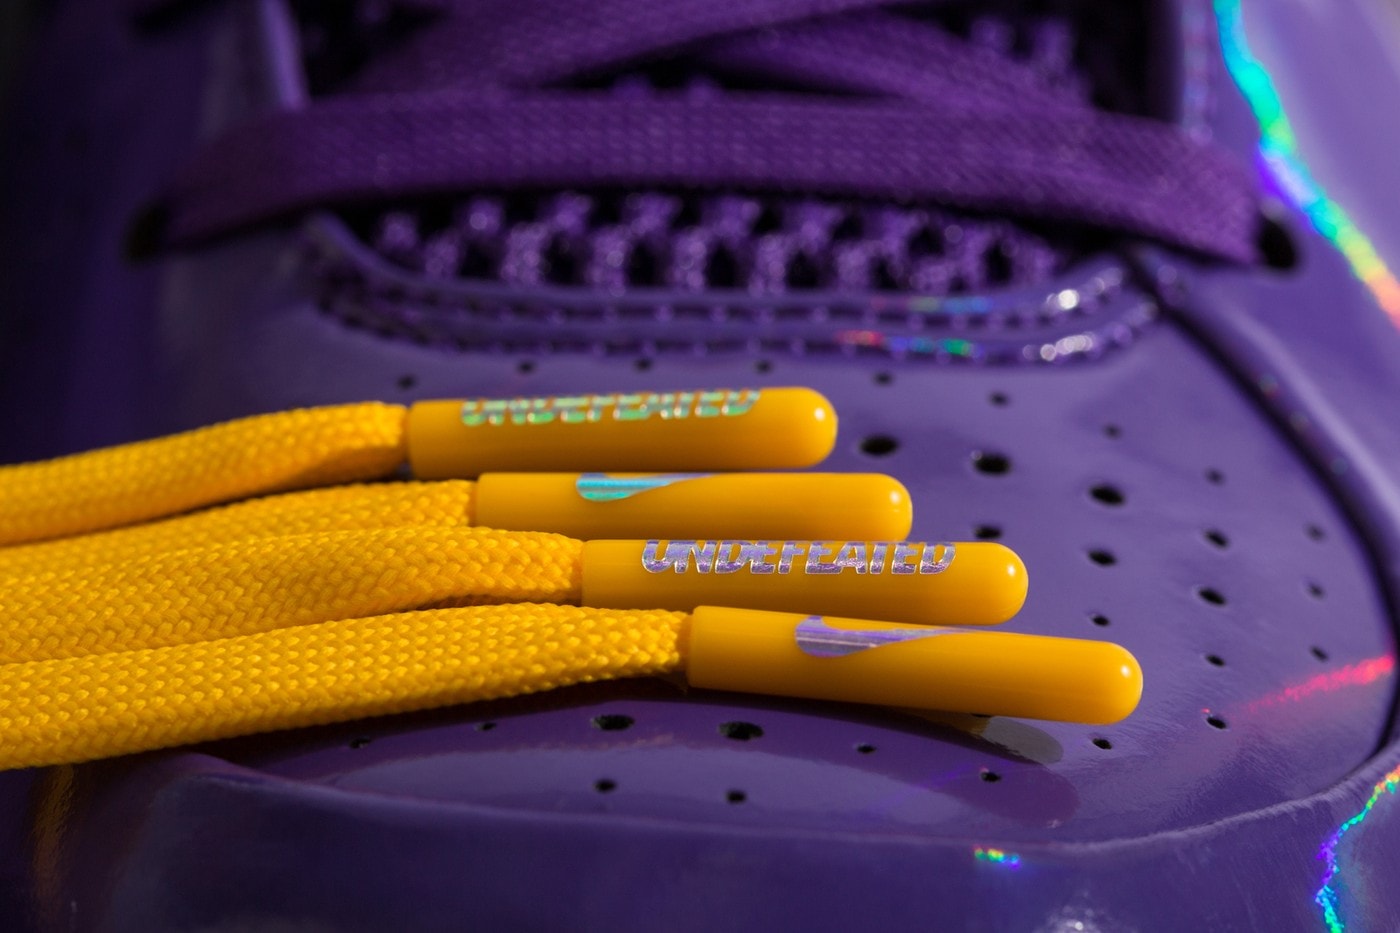 率先近覽 UNDEFEATED x Nike Kobe 4 Protro 最新聯乘系列